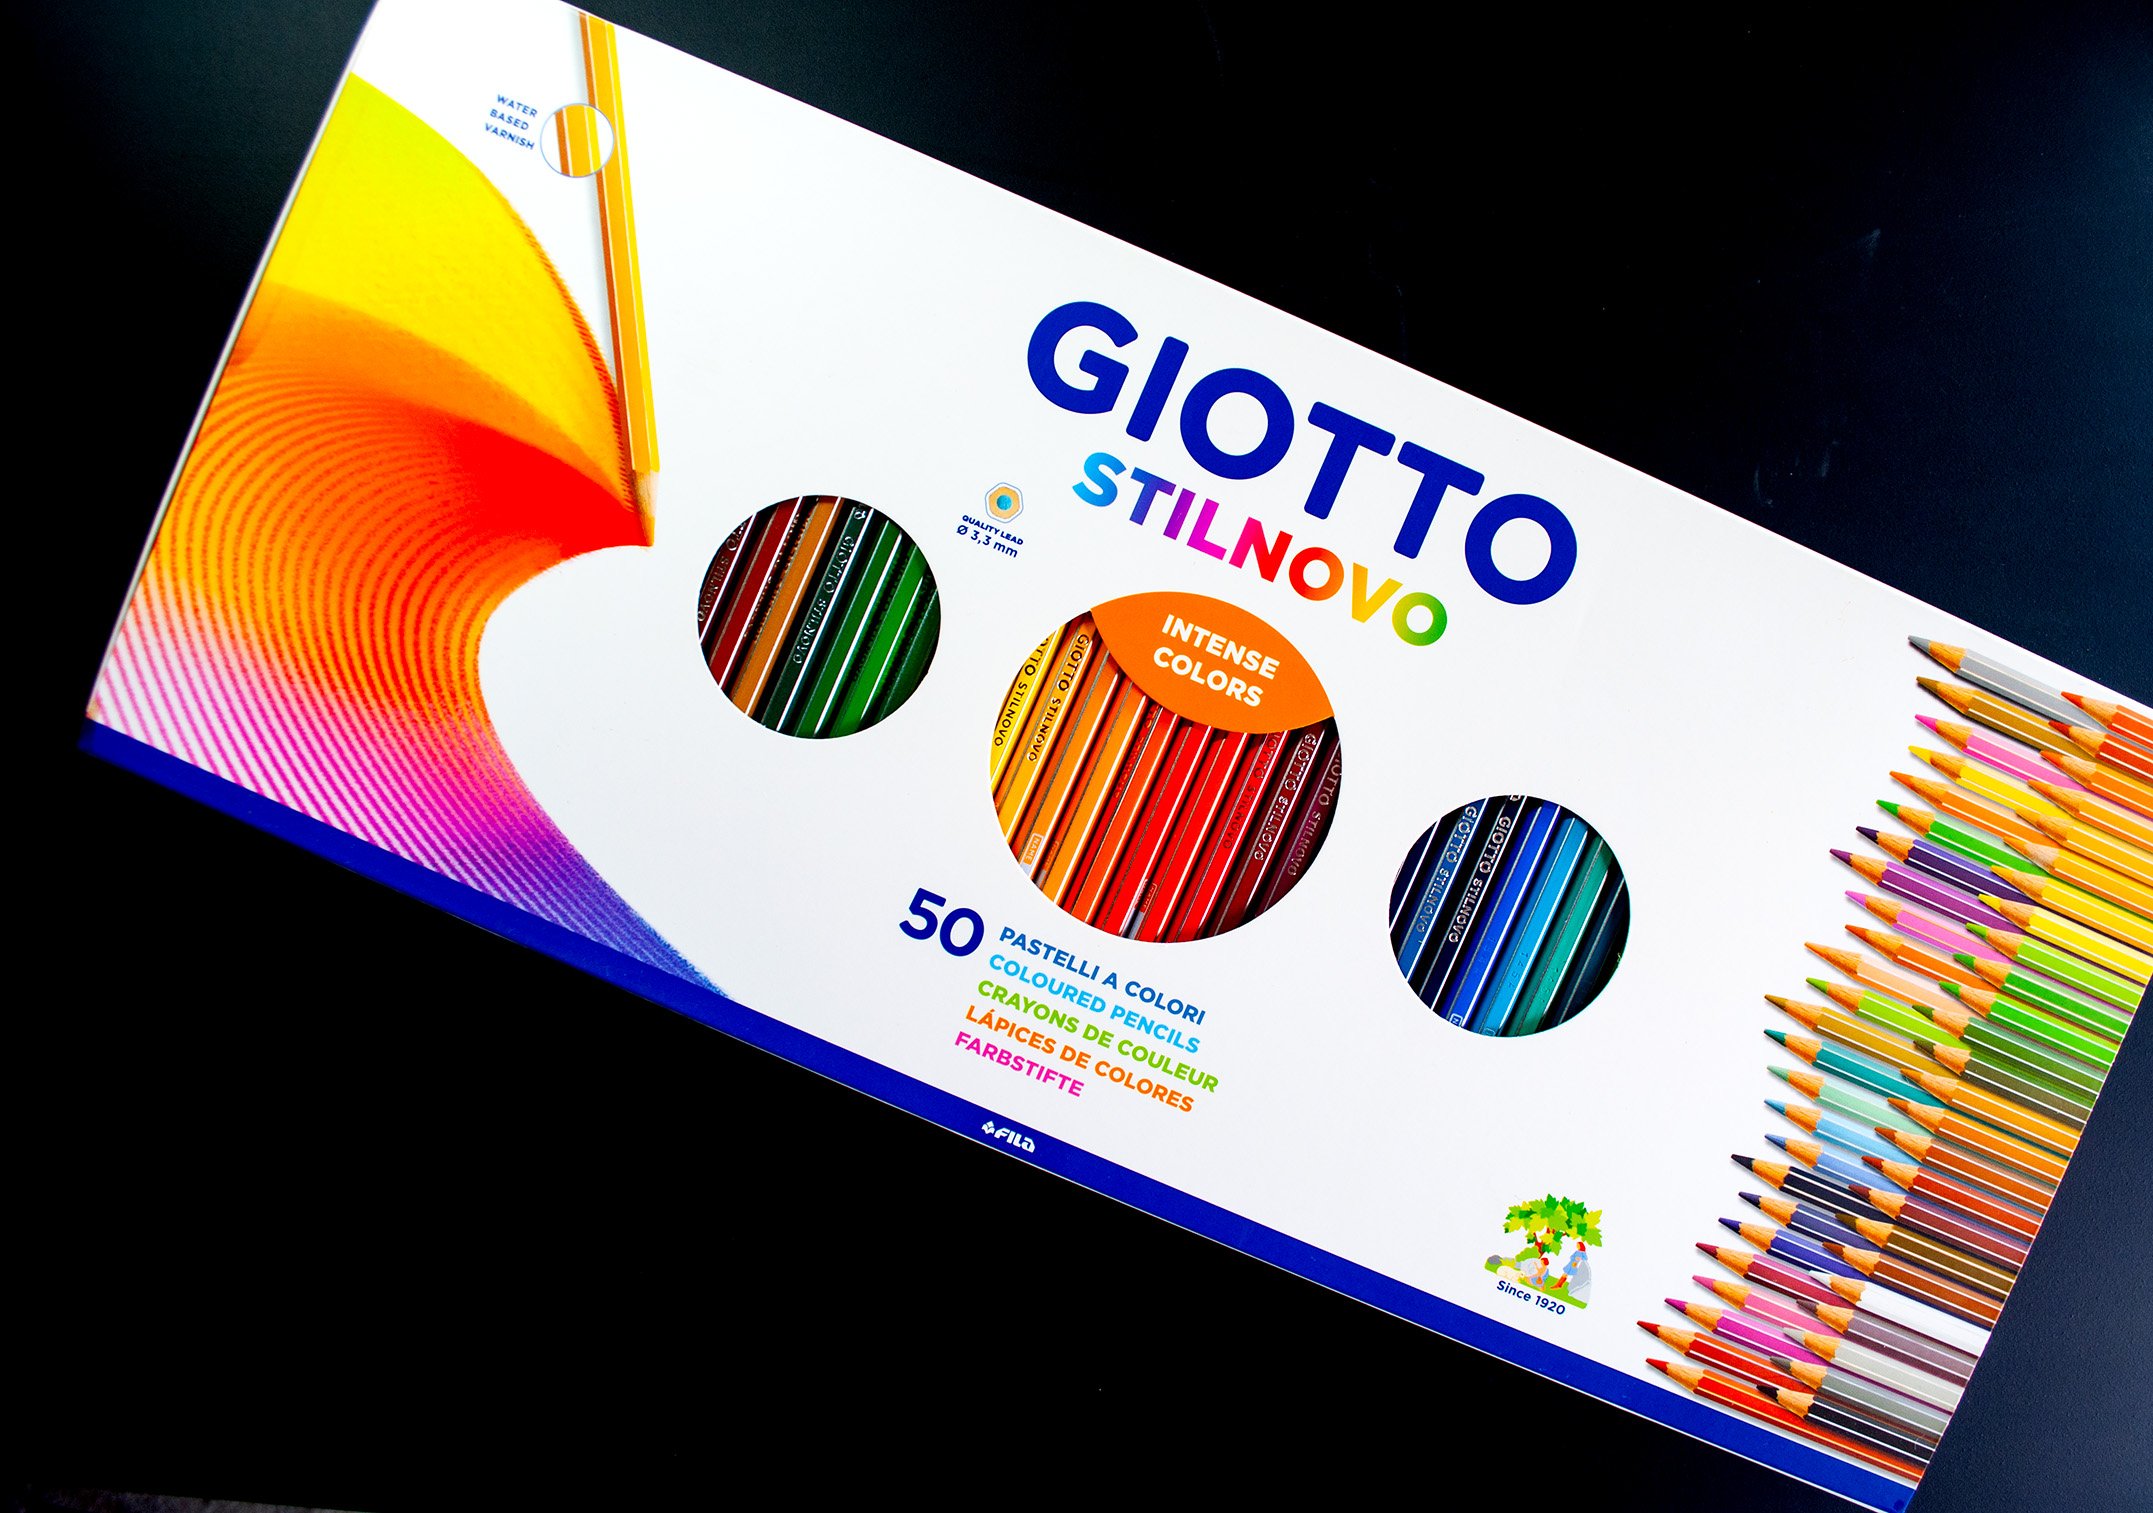 36 pastelli a colori Stilnovo Giotto